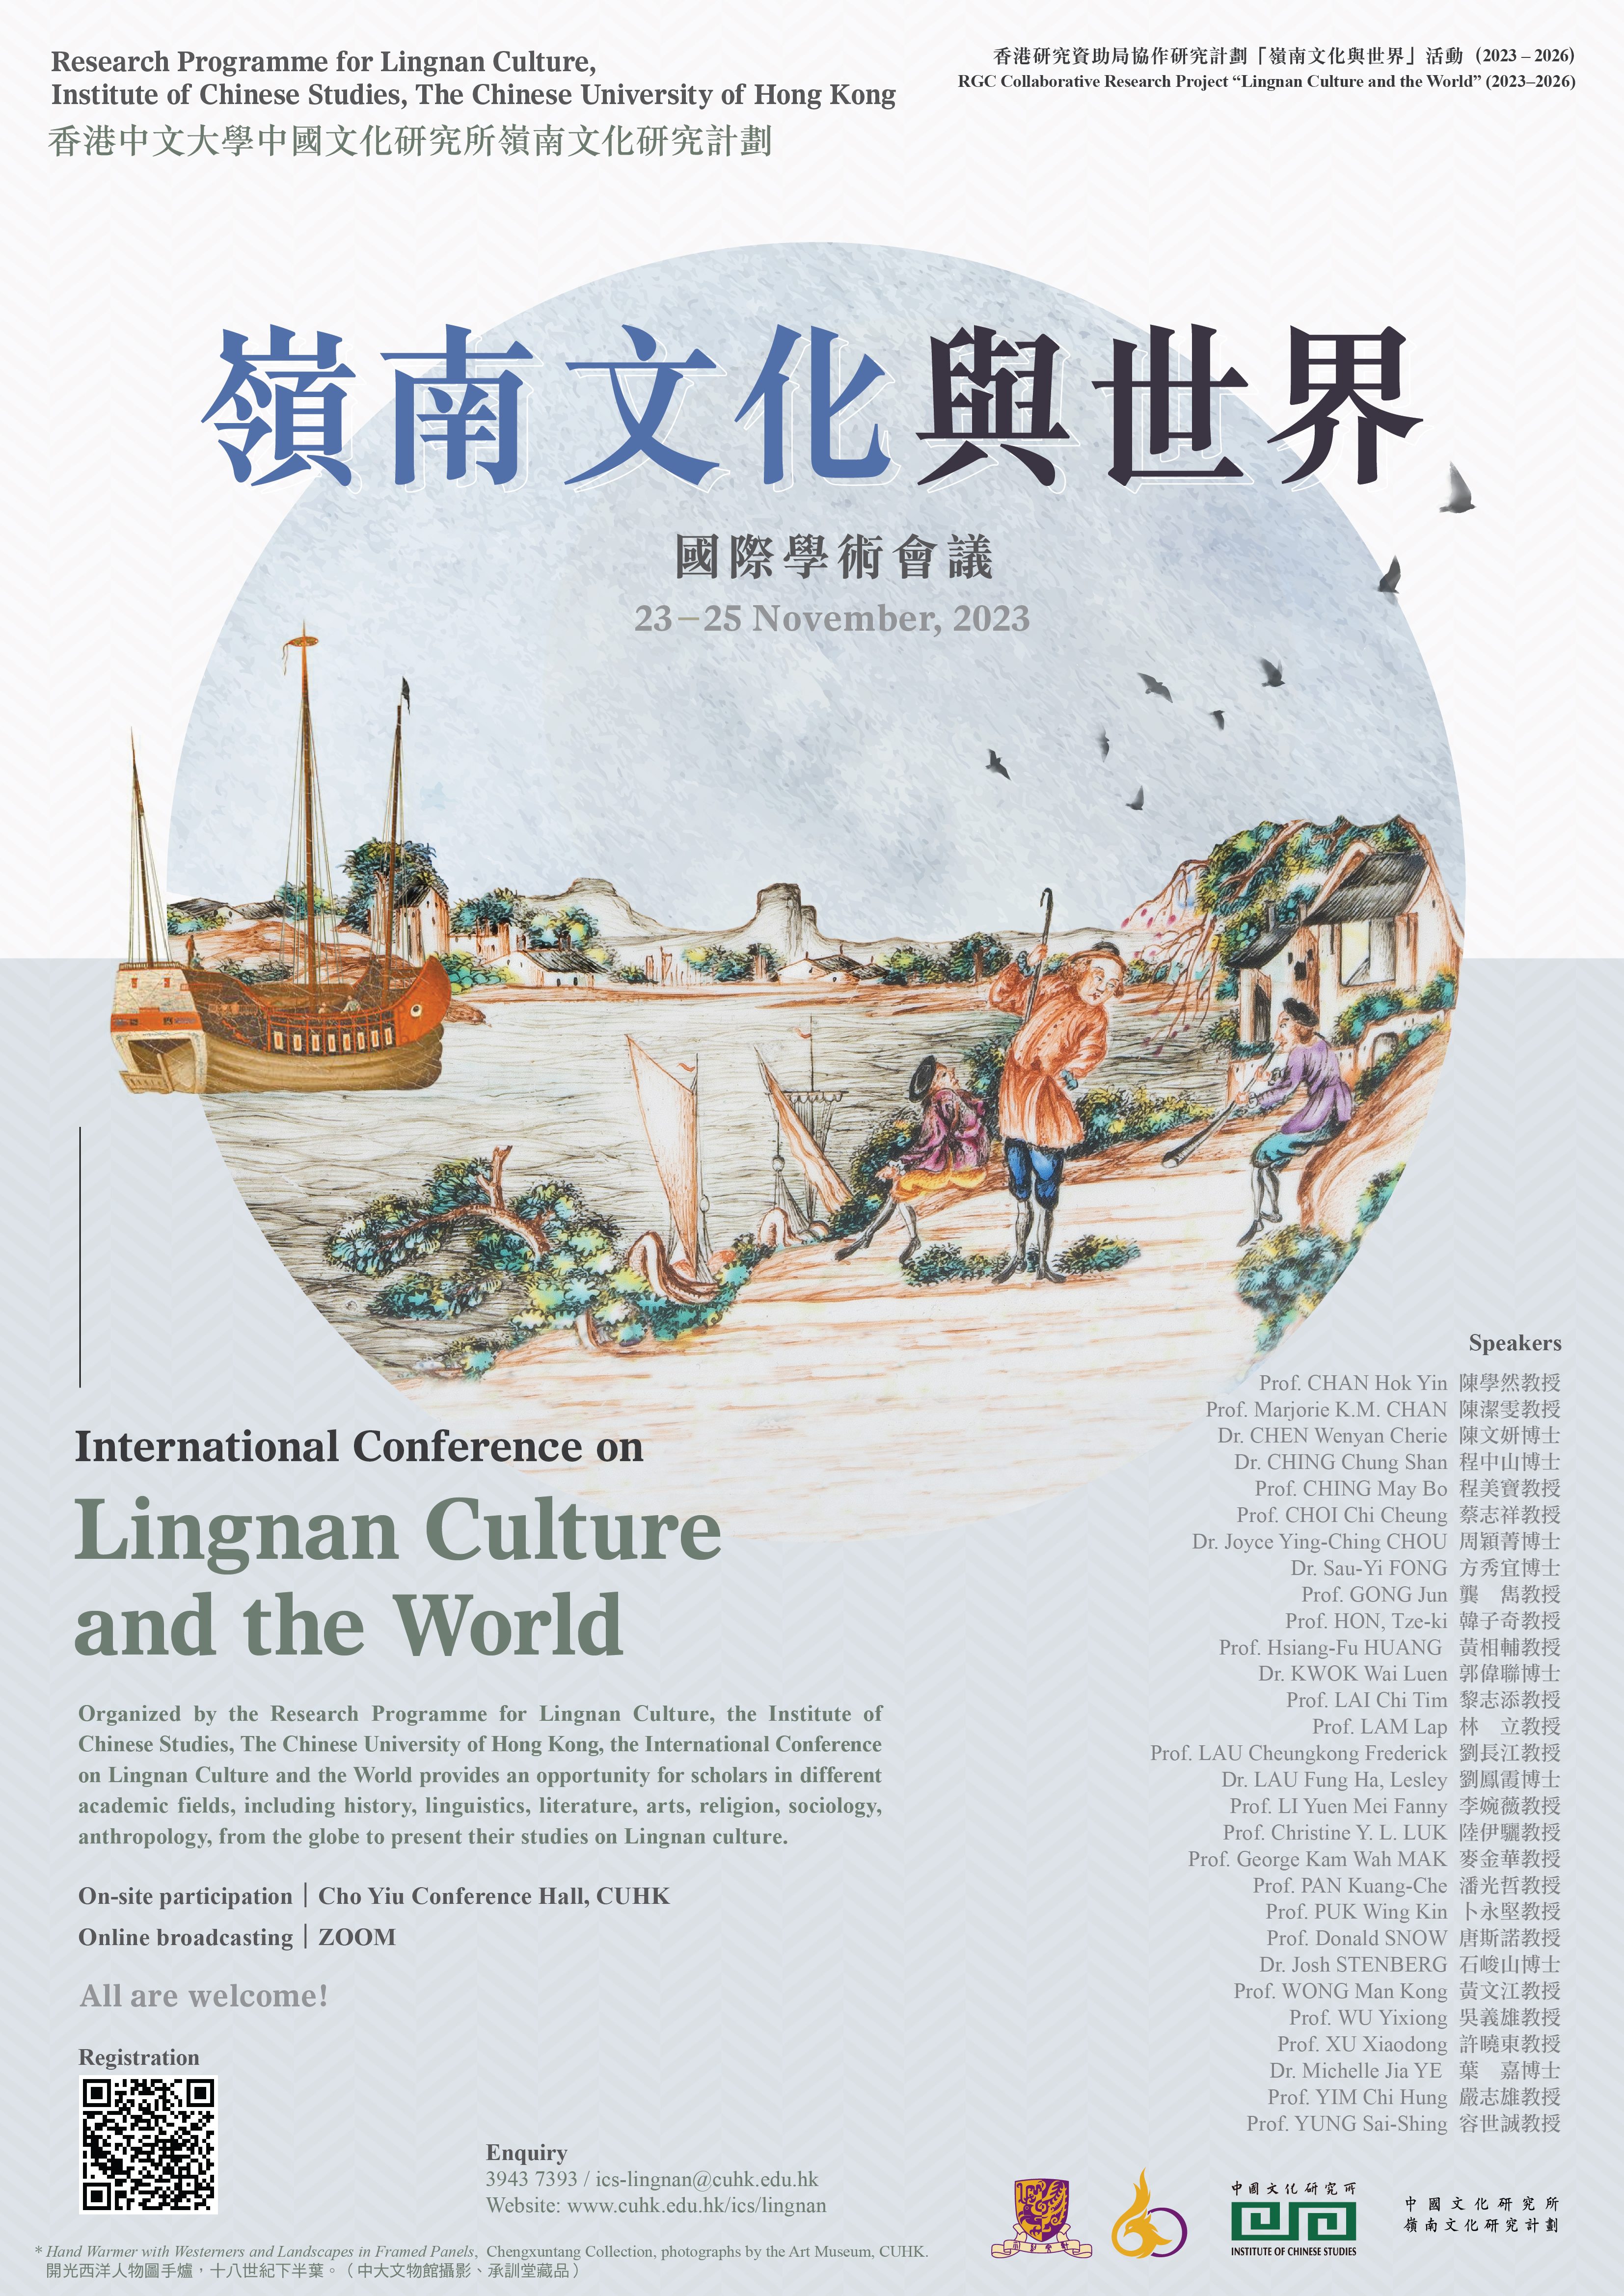 「嶺南文化與世界」國際學術會議